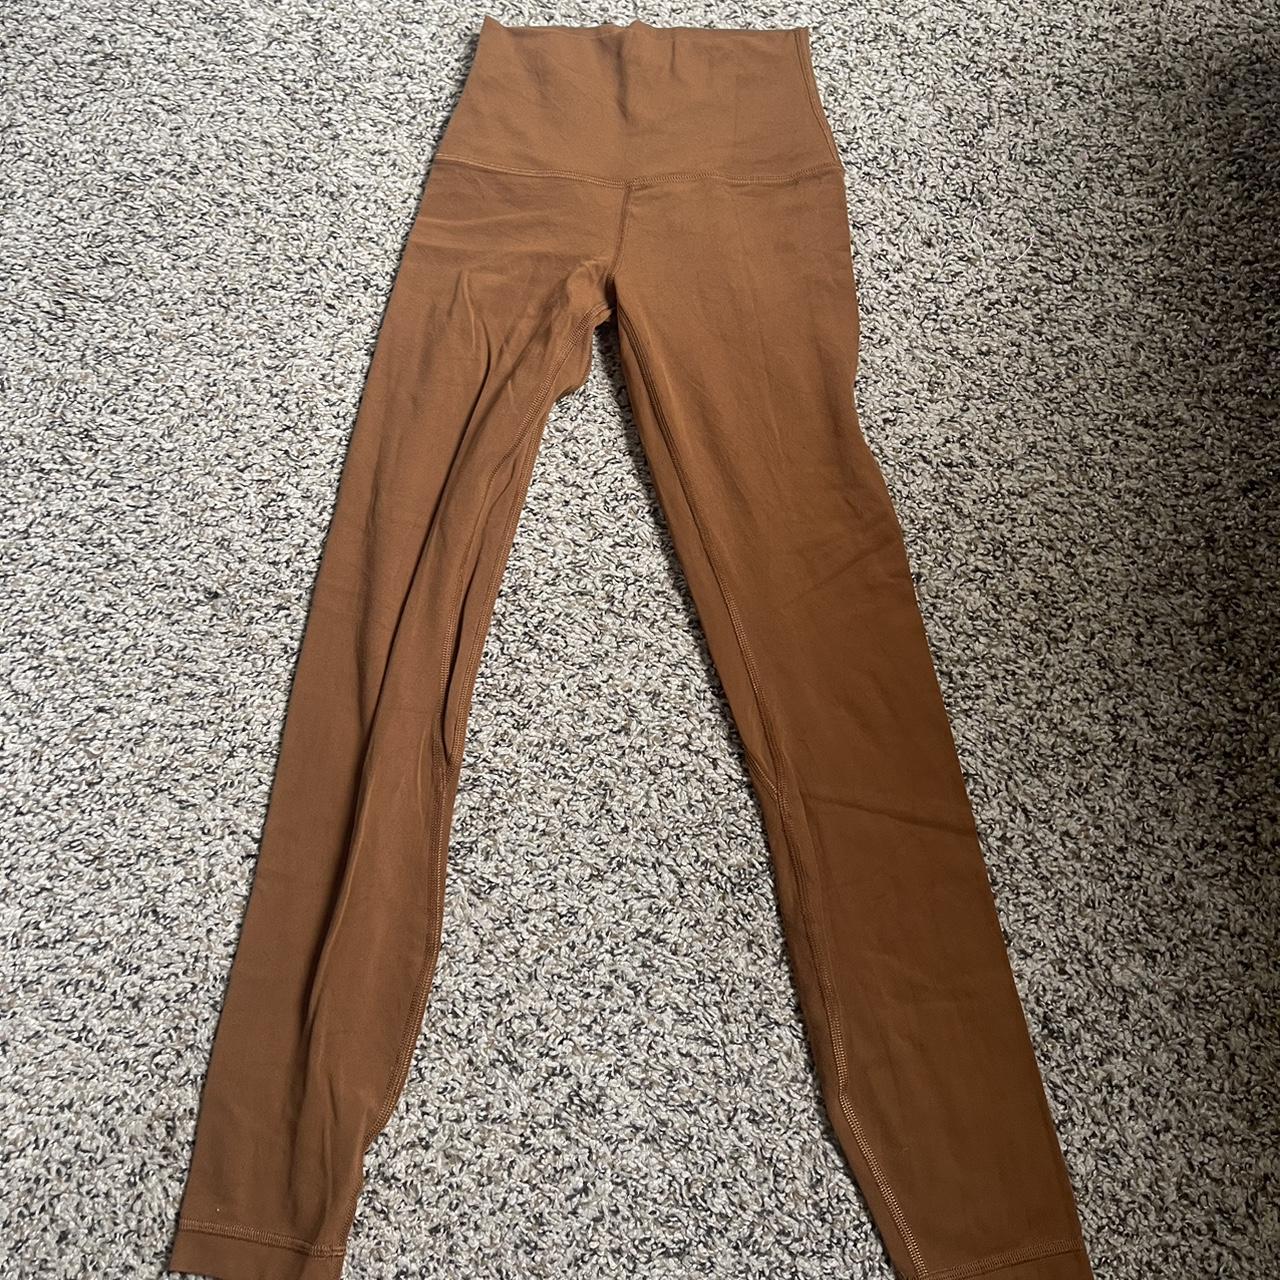 Lululemon align leggings size 0 length 25 Sold - Depop